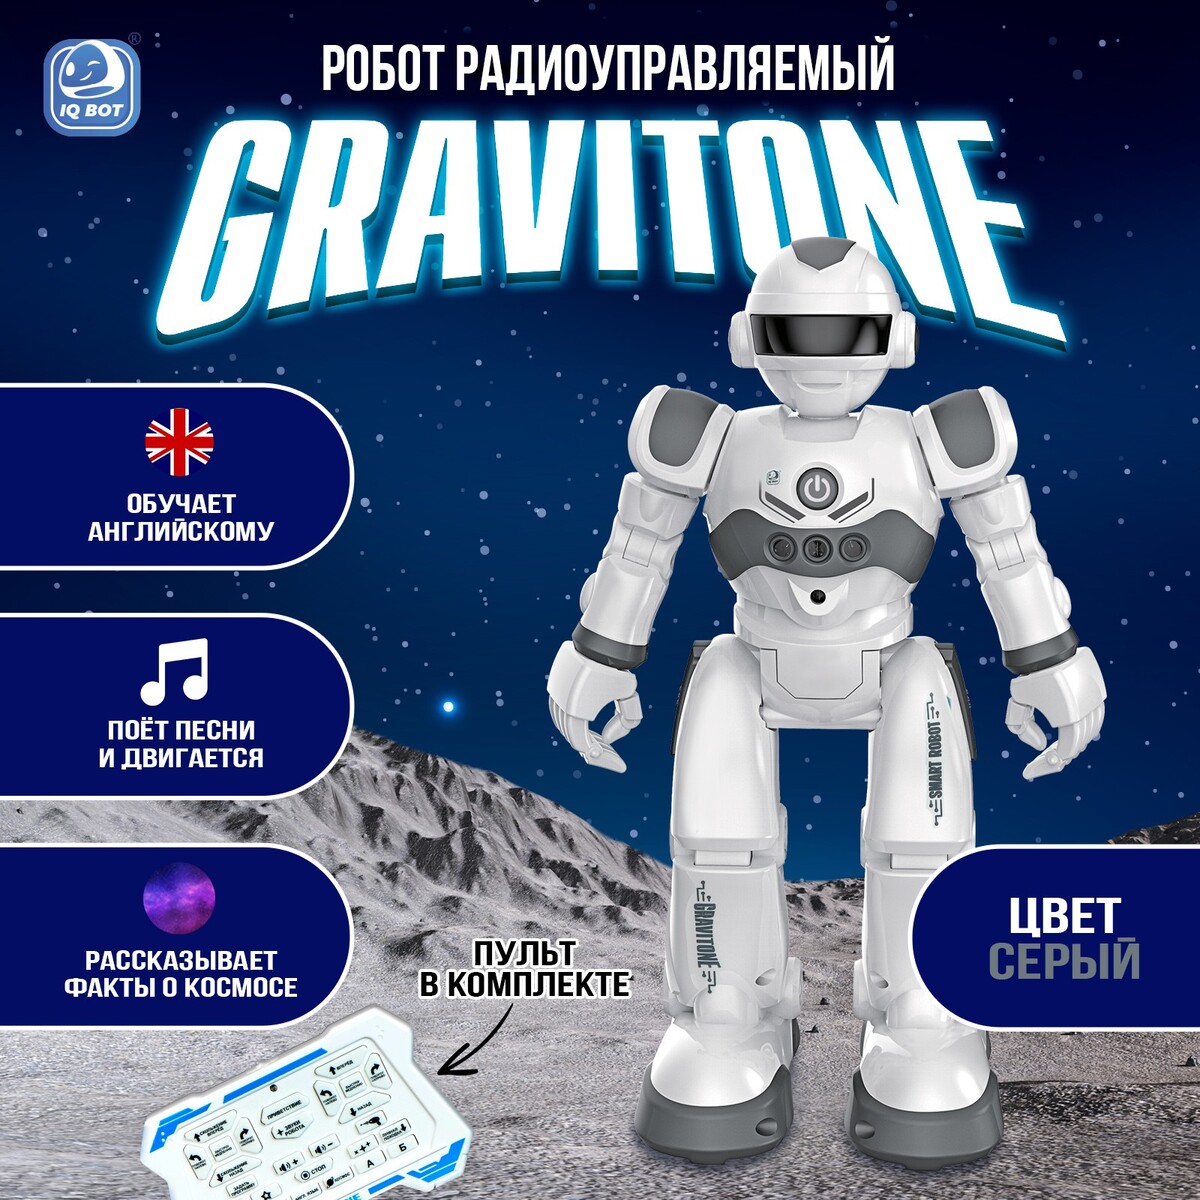 Робот радиоуправляемый iq bot gravitone, русское озвучивание, цвет серый русское окно